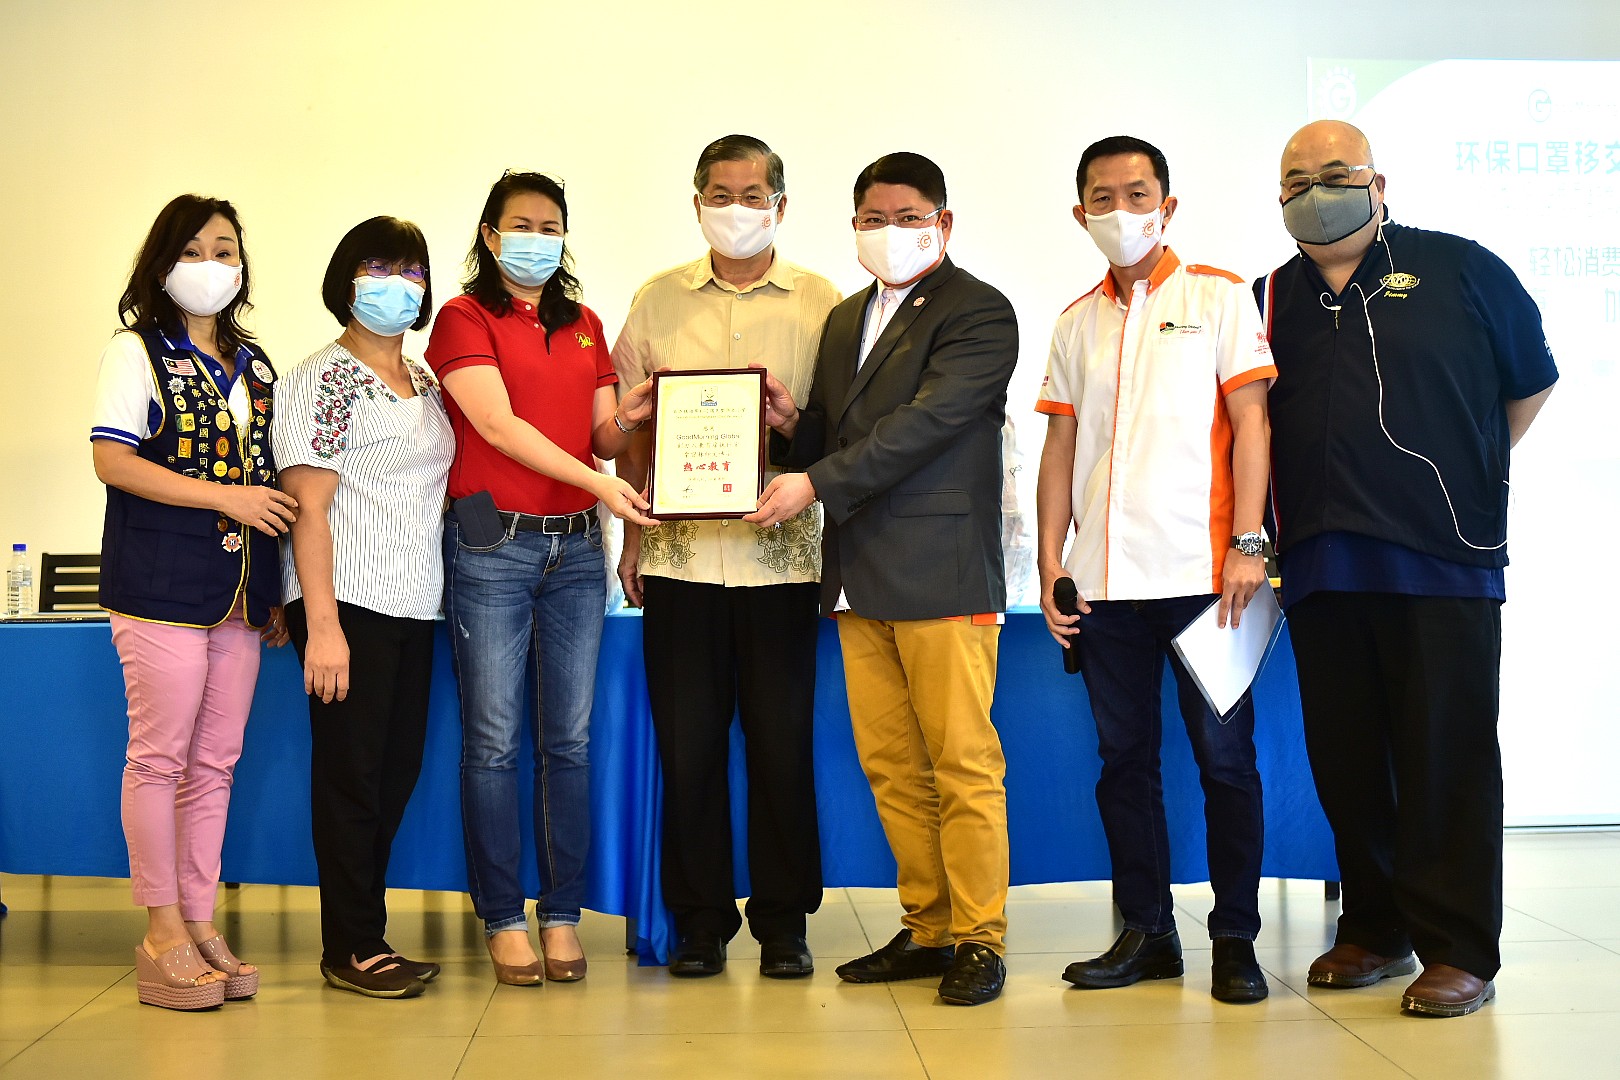 赠送环保口罩移交仪式 Reusable Mask Distribution Ceremony - Johor 15.08.2020 8